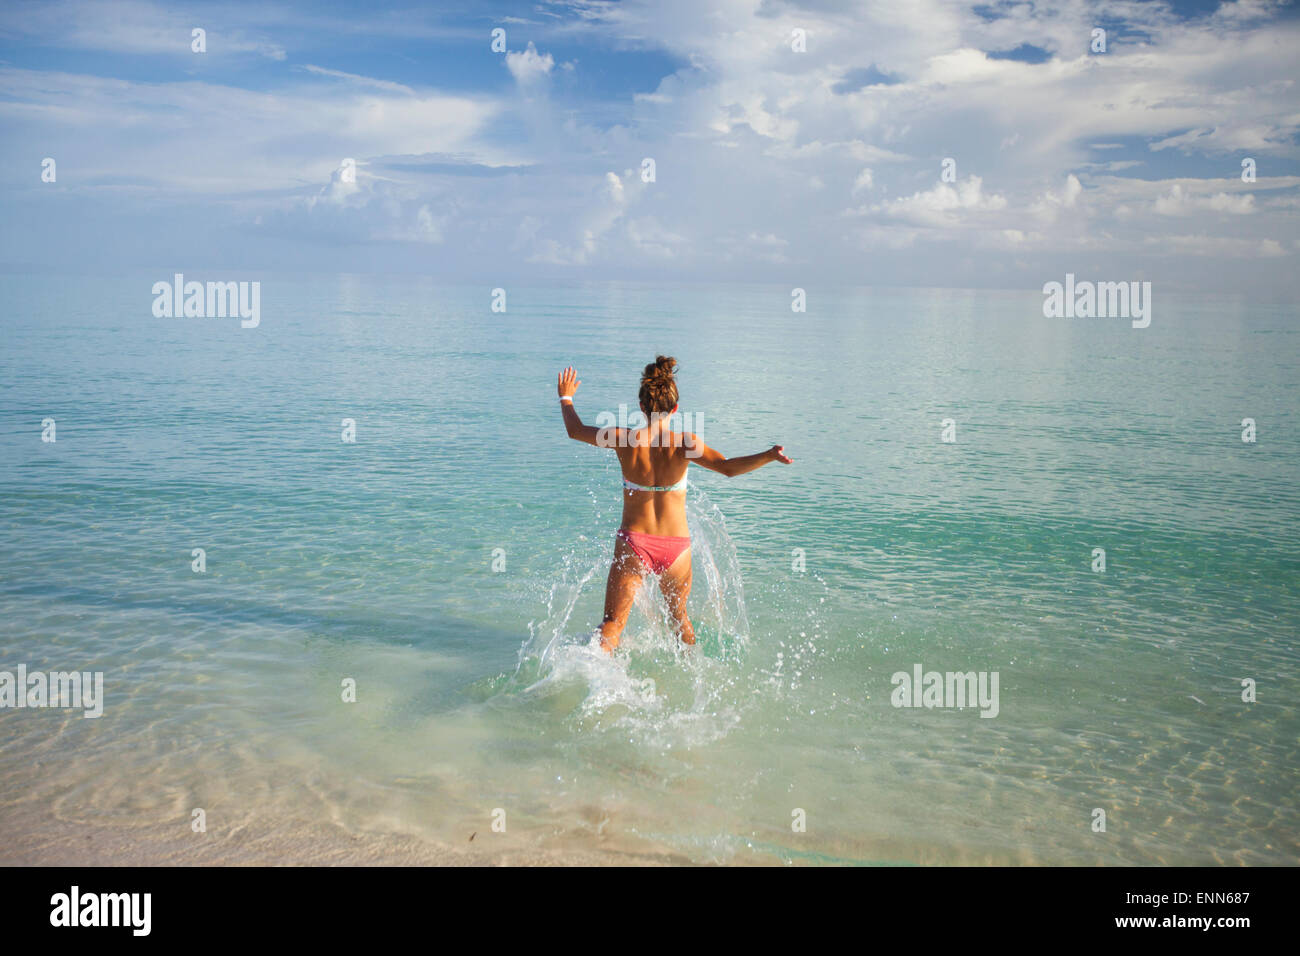 Eine junge Frau läuft in flachen türkisfarbenen Wasser während des Urlaubs in Kuba. Stockfoto